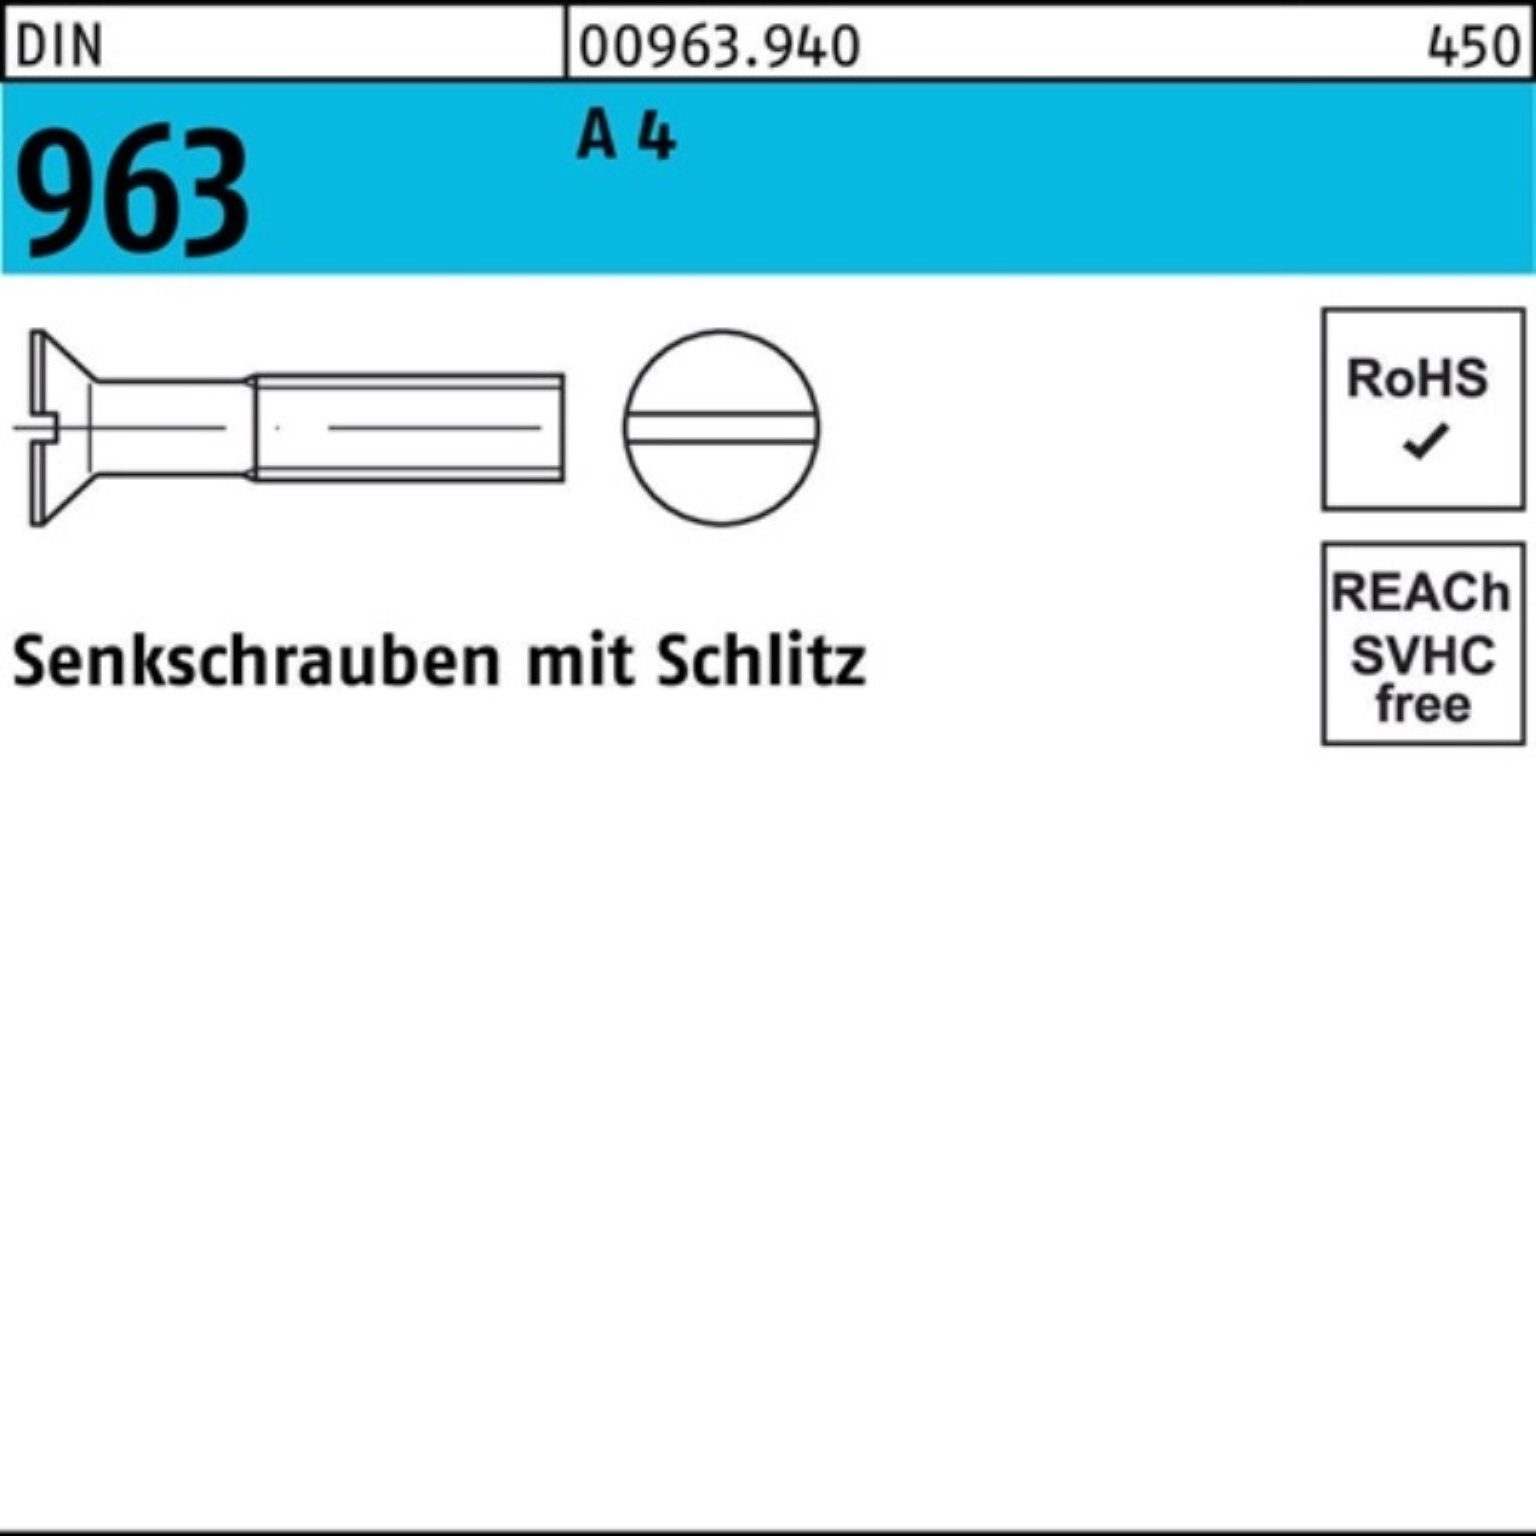 Reyher Senkschraube 100er 963 A Schlitz 50 DIN 4 DIN 16 963 Senkschraube Pack Stück M10x